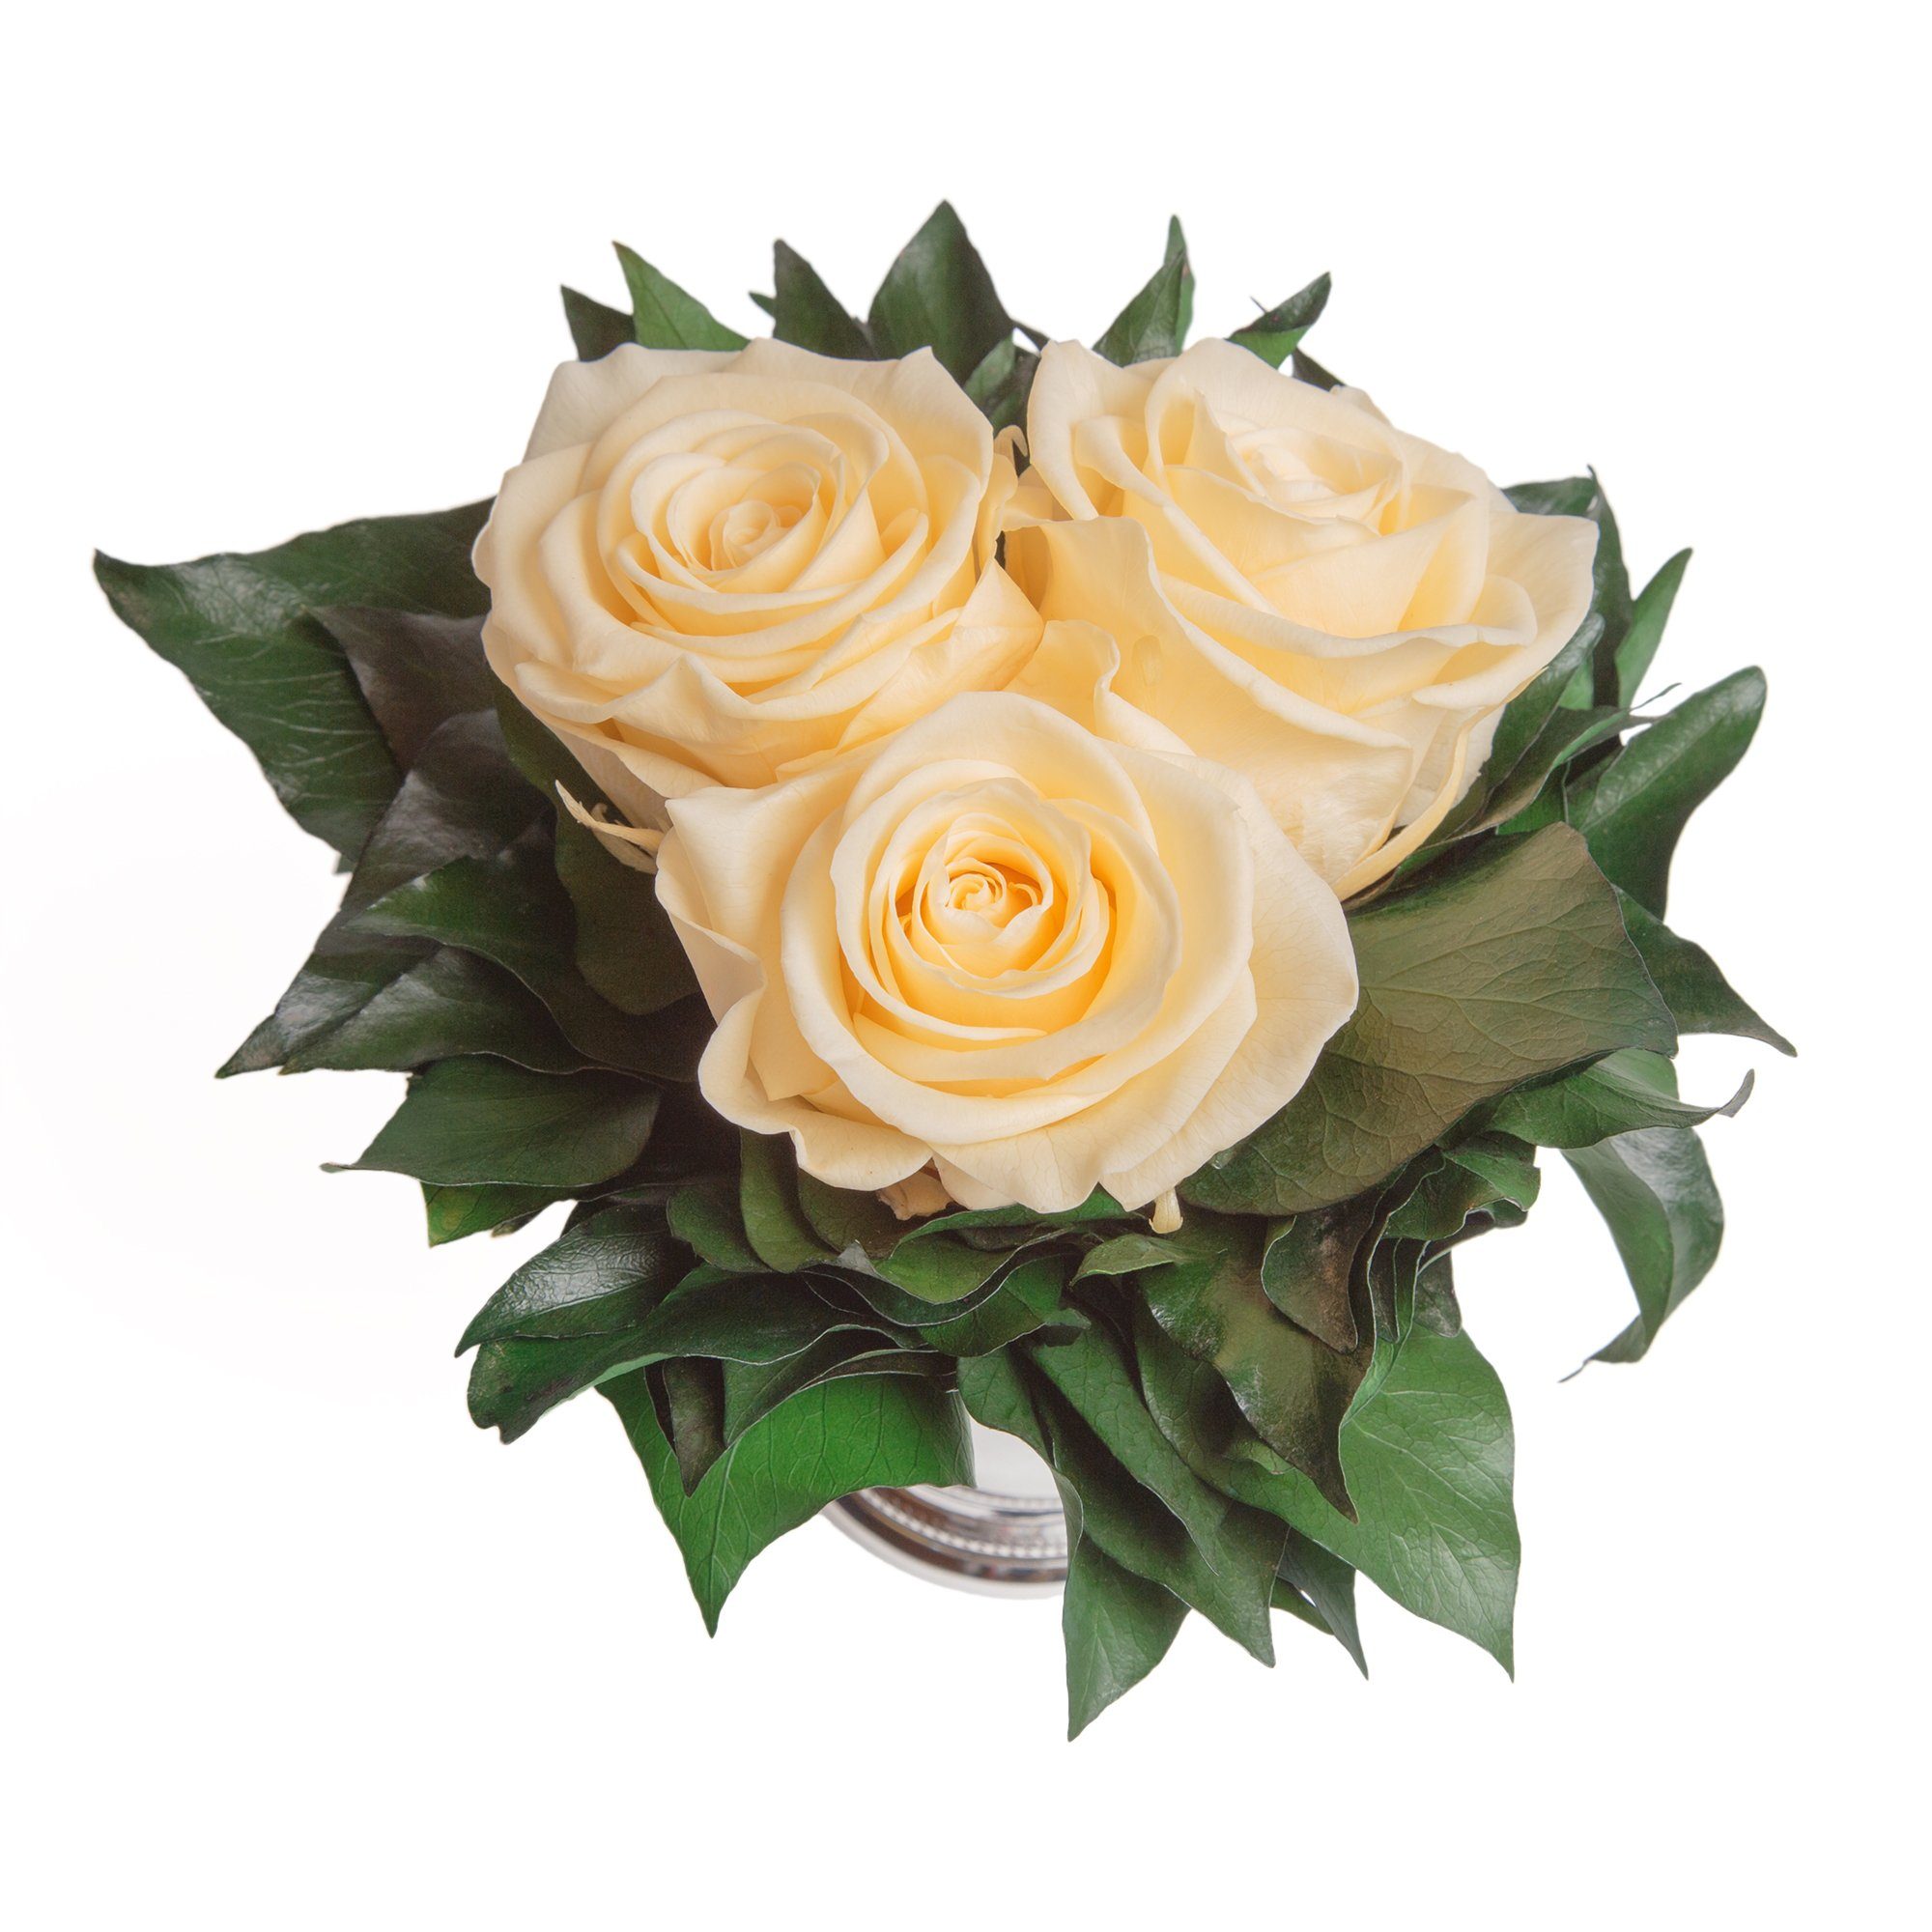 Deko Infinity Vase Rose 3 3 cm, ROSEMARIE haltbar Champagner Jahre Rose, SCHULZ Heidelberg, Blumenstrauß Wohnzimmer Höhe bis 15 silberfarbene zu Kunstorchidee Rosen